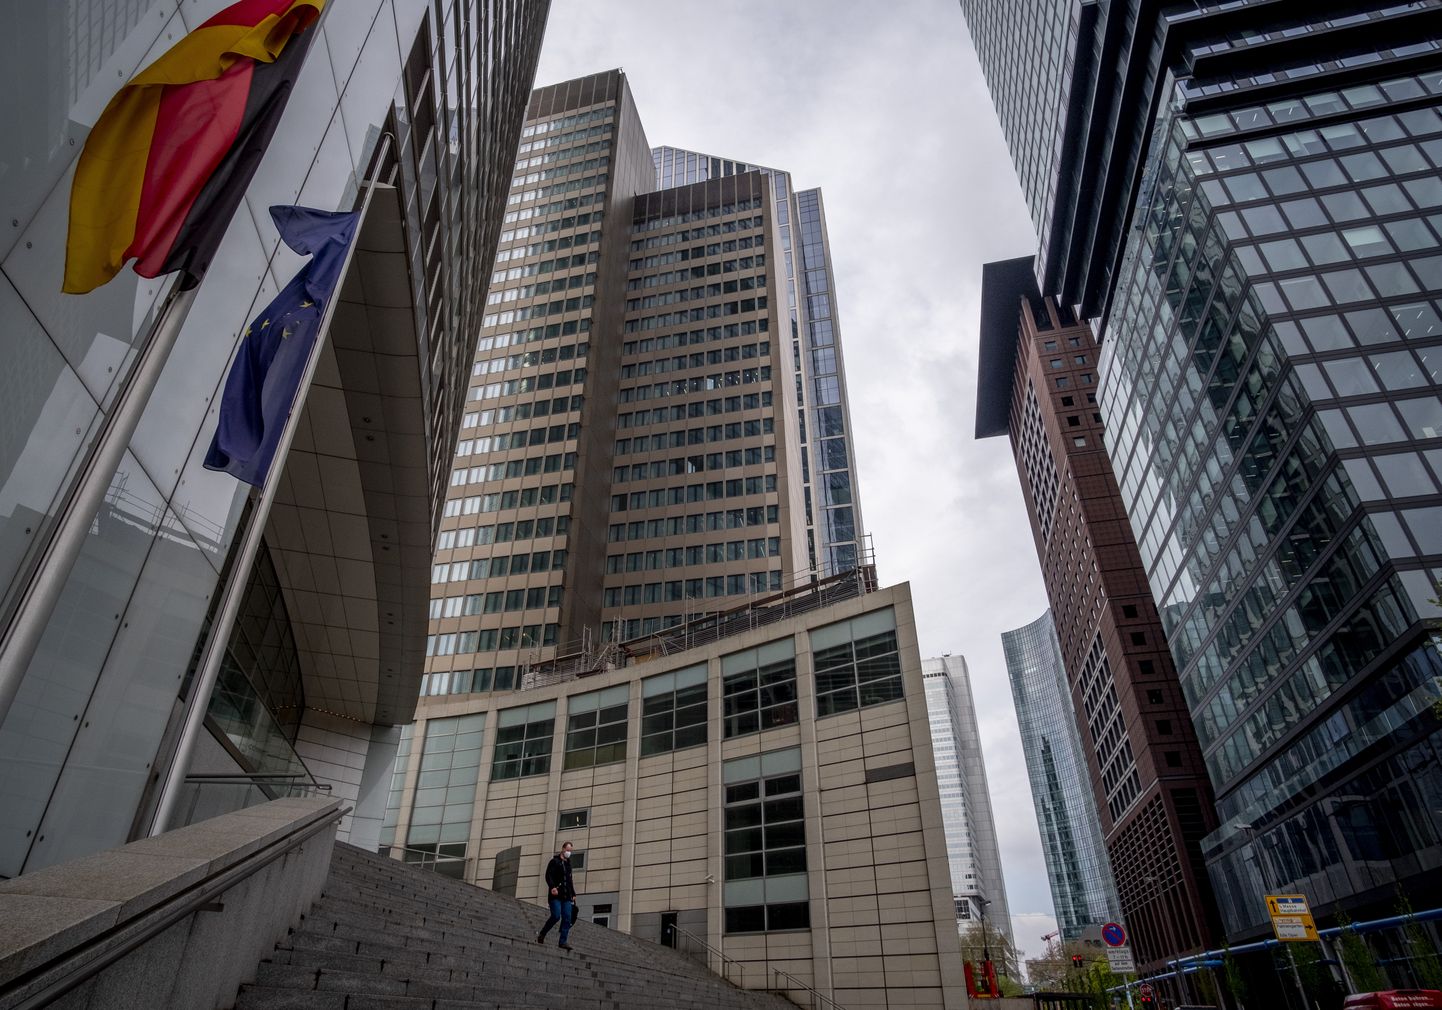 Commerzbanki puhasintressitulu tipu jutt polnud investoritele meelepärane